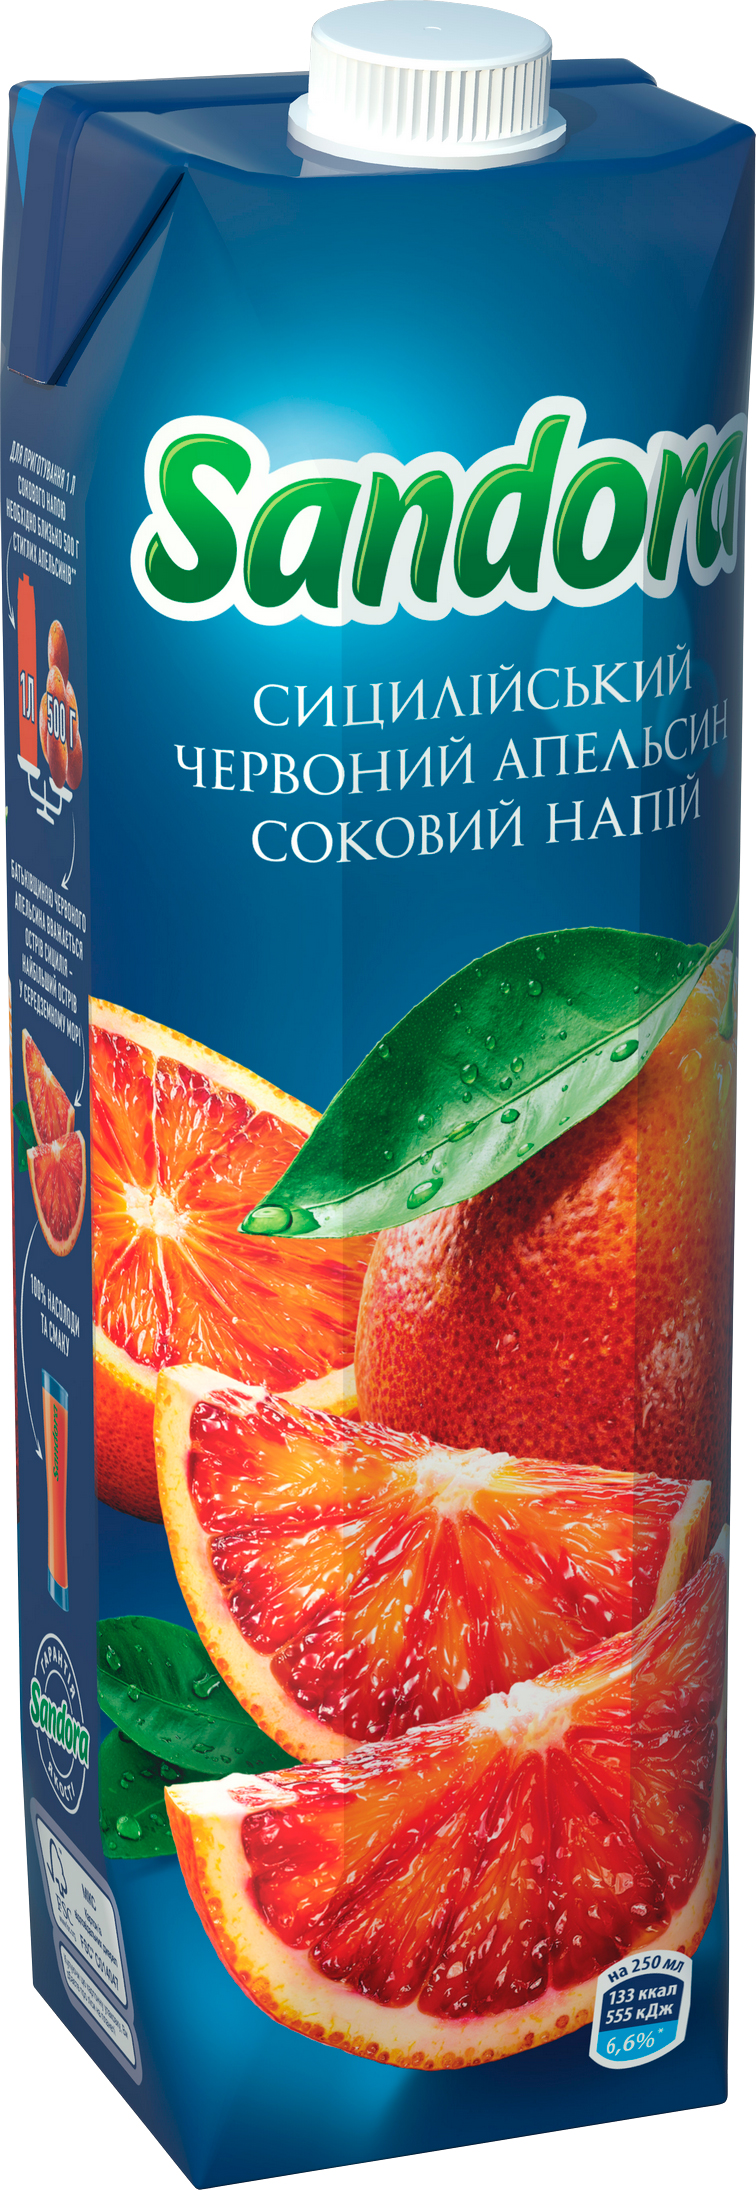 Акция на Соковый напиток Sandora Сицилийский красный апельсин 0.95 л х 10 шт (4823063113045) от Rozetka UA